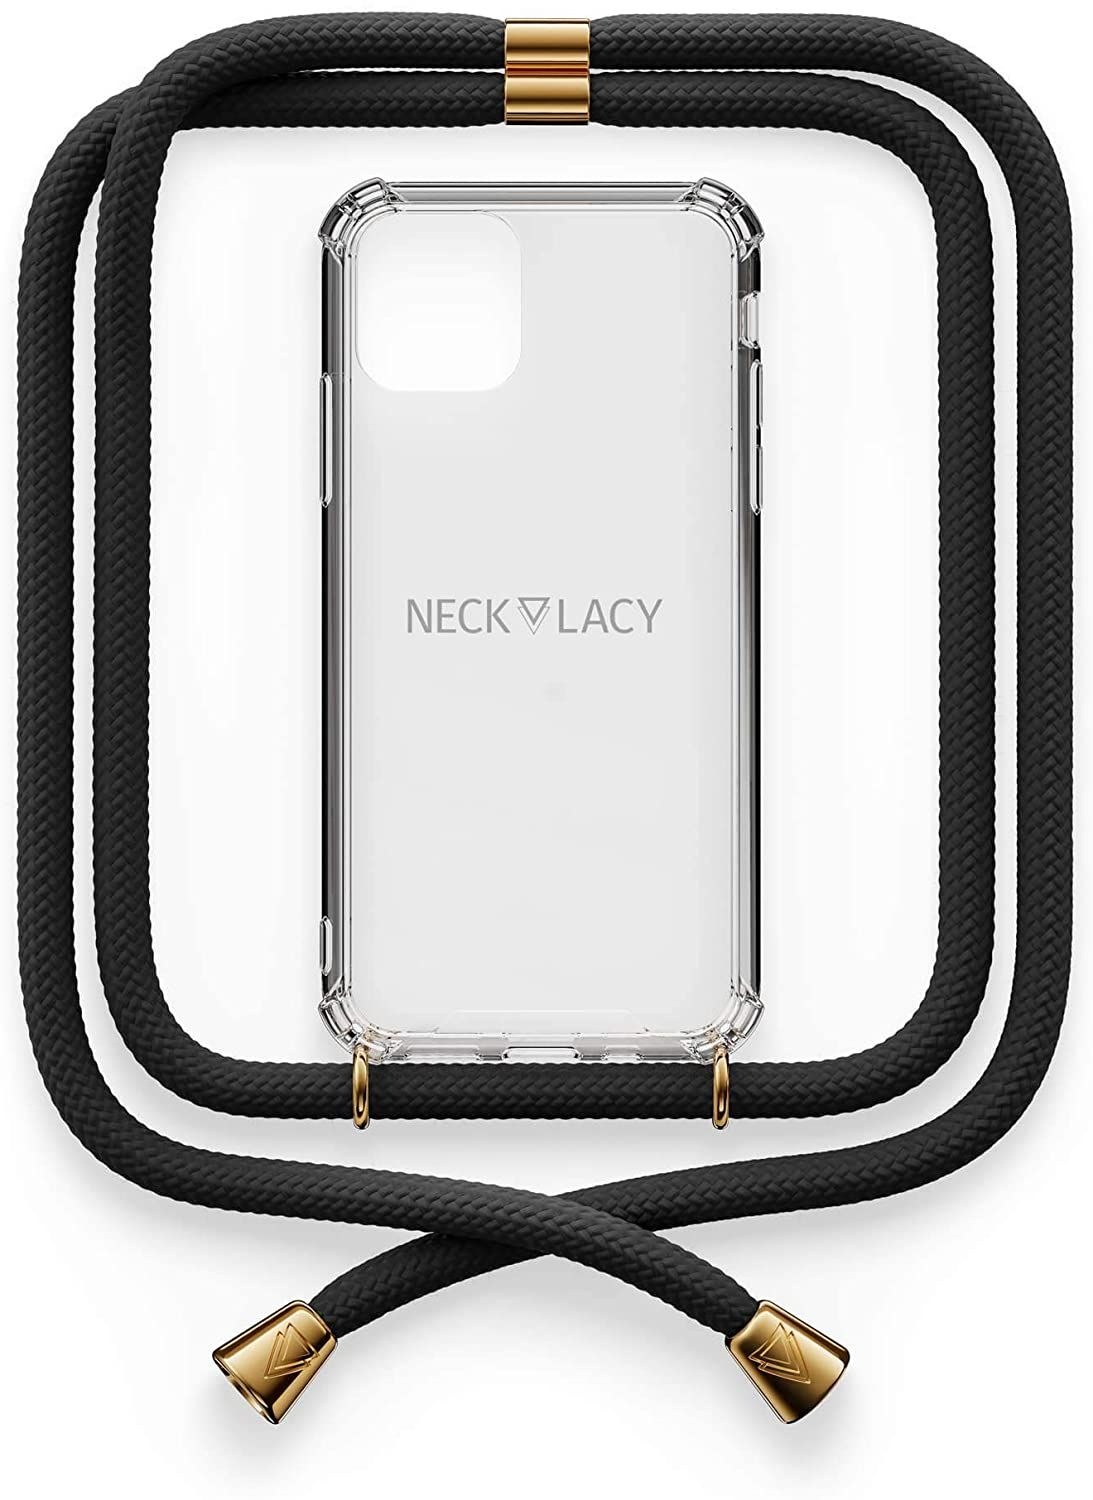 NECKLACY Handykette Handyhülle zum umhängen - für iPhone X/XS - Case / Handyhülle mit Band zum umhängen - Trageband Hals mit Kordel - Smartphone Necklace, Elegant Black